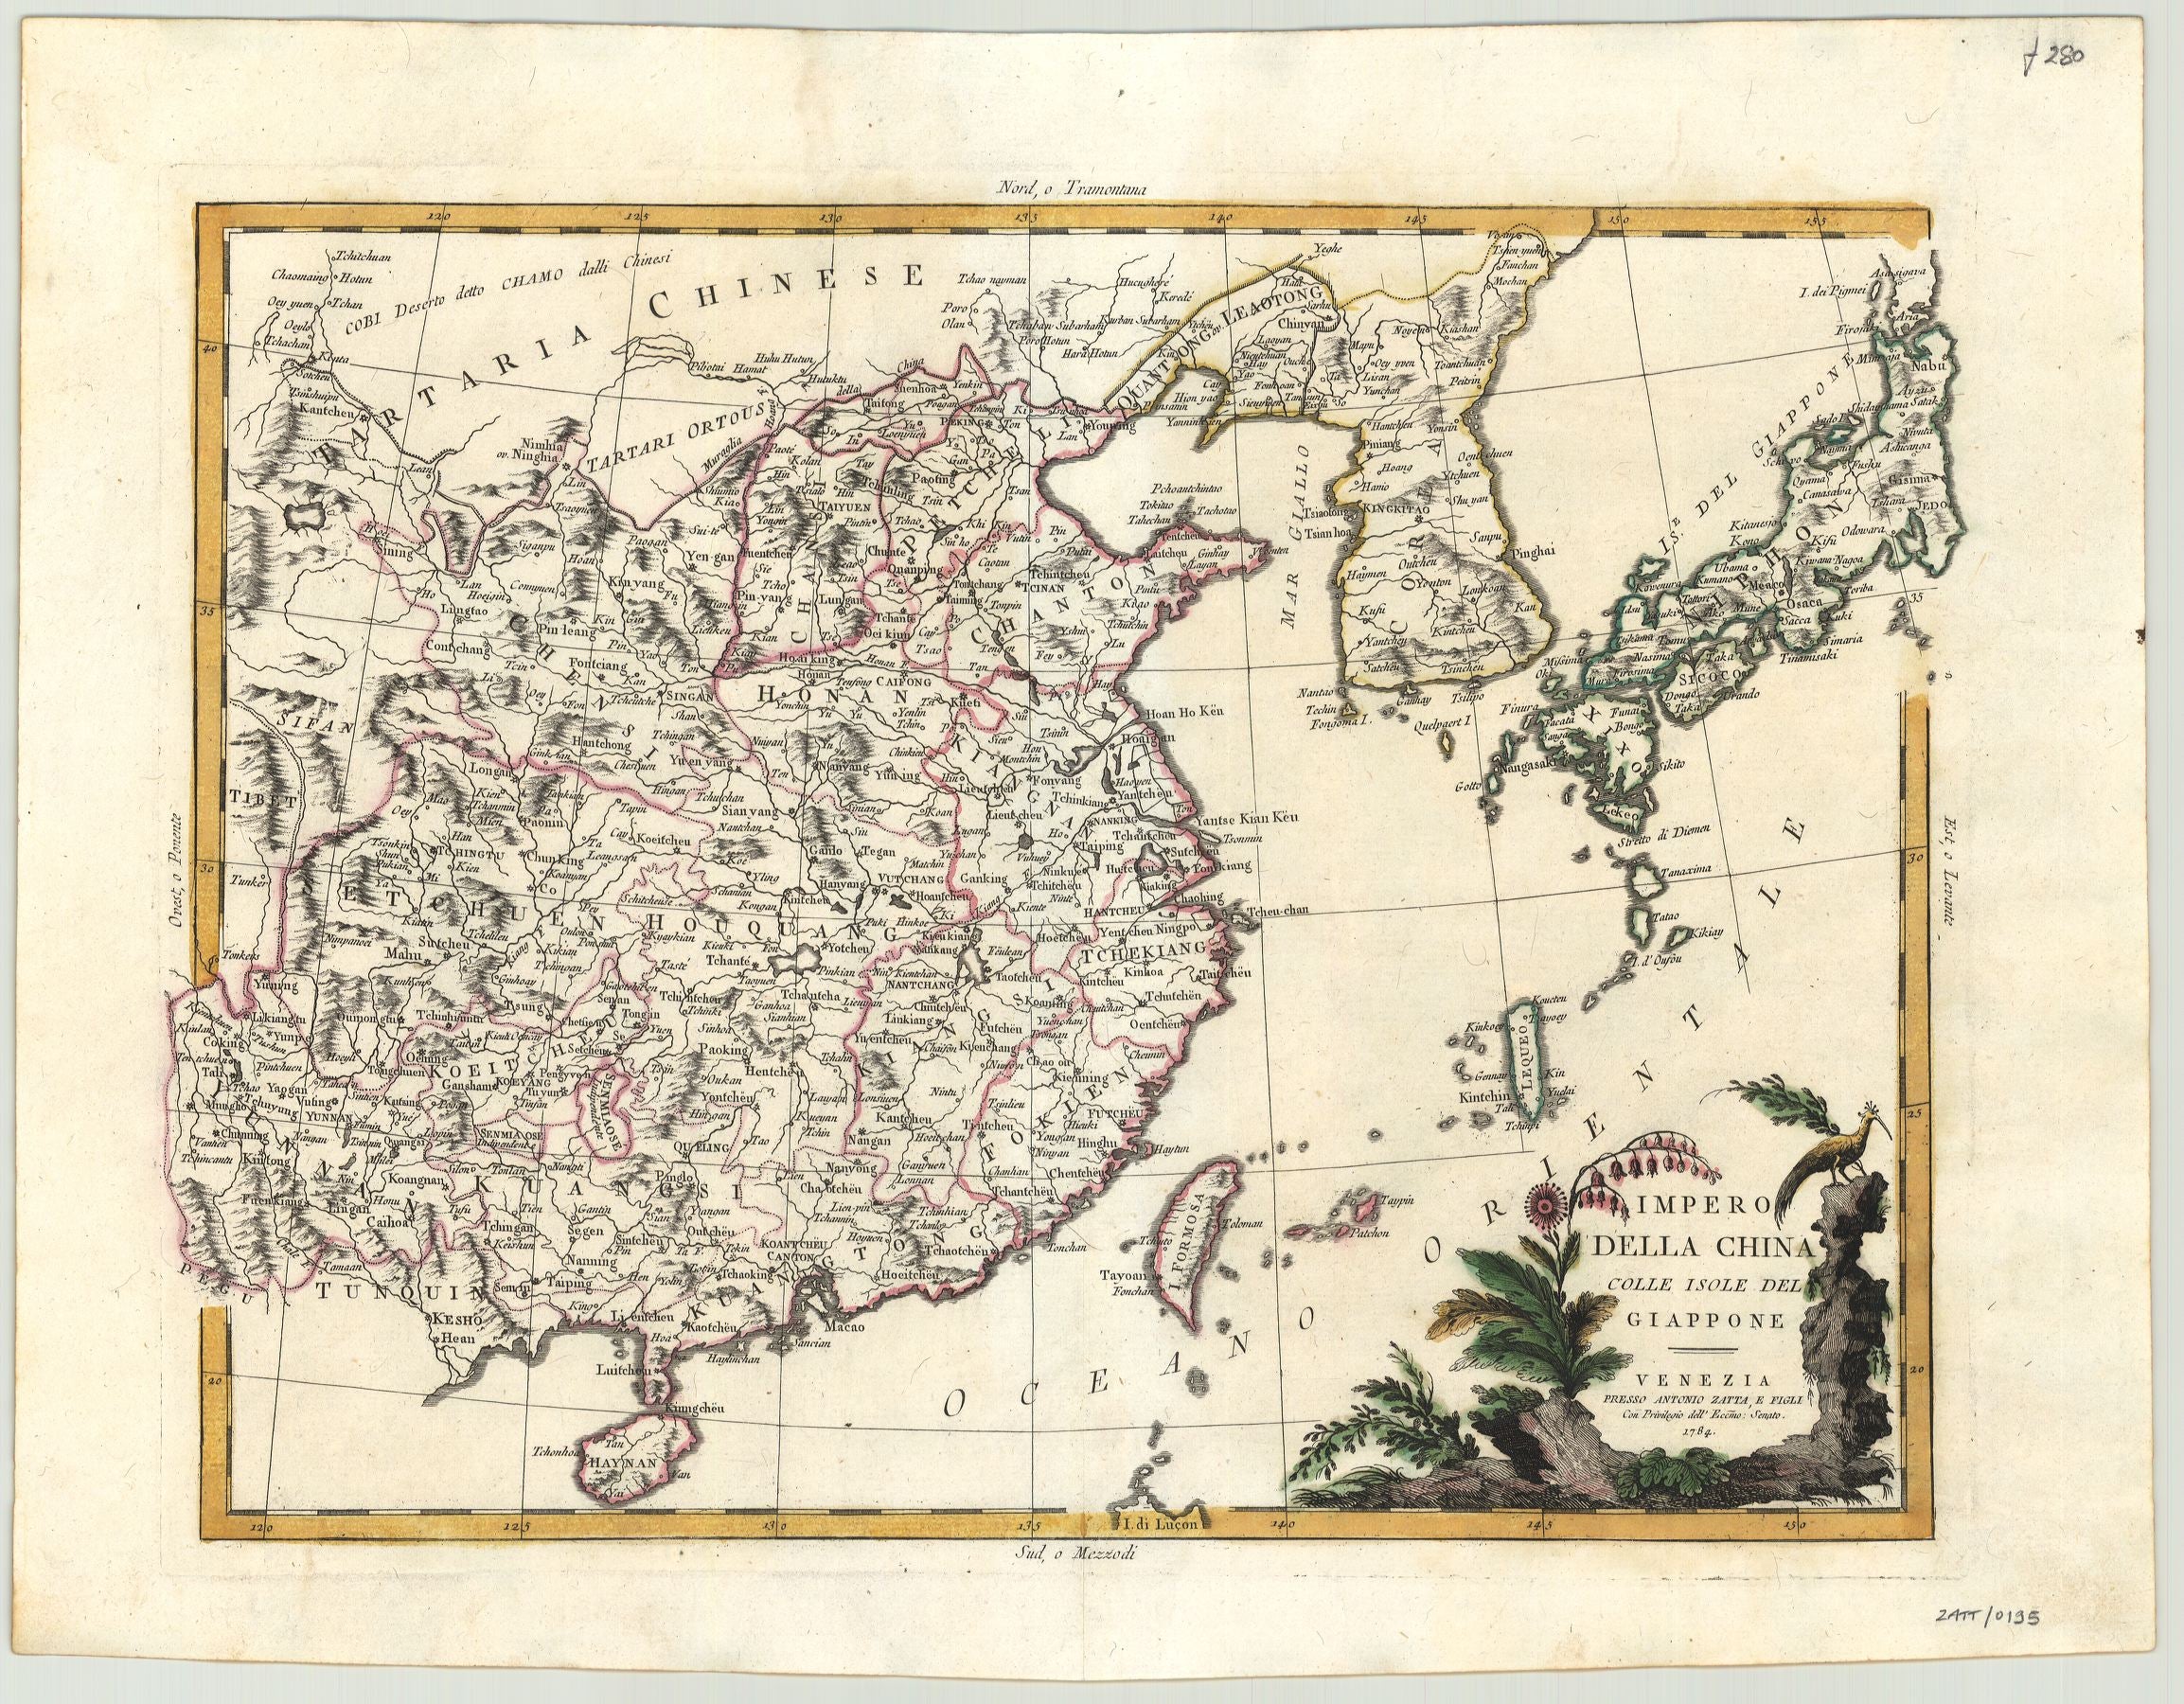 Zatta, Antonio: Imperio della China Colle Isole del Giappone 1784